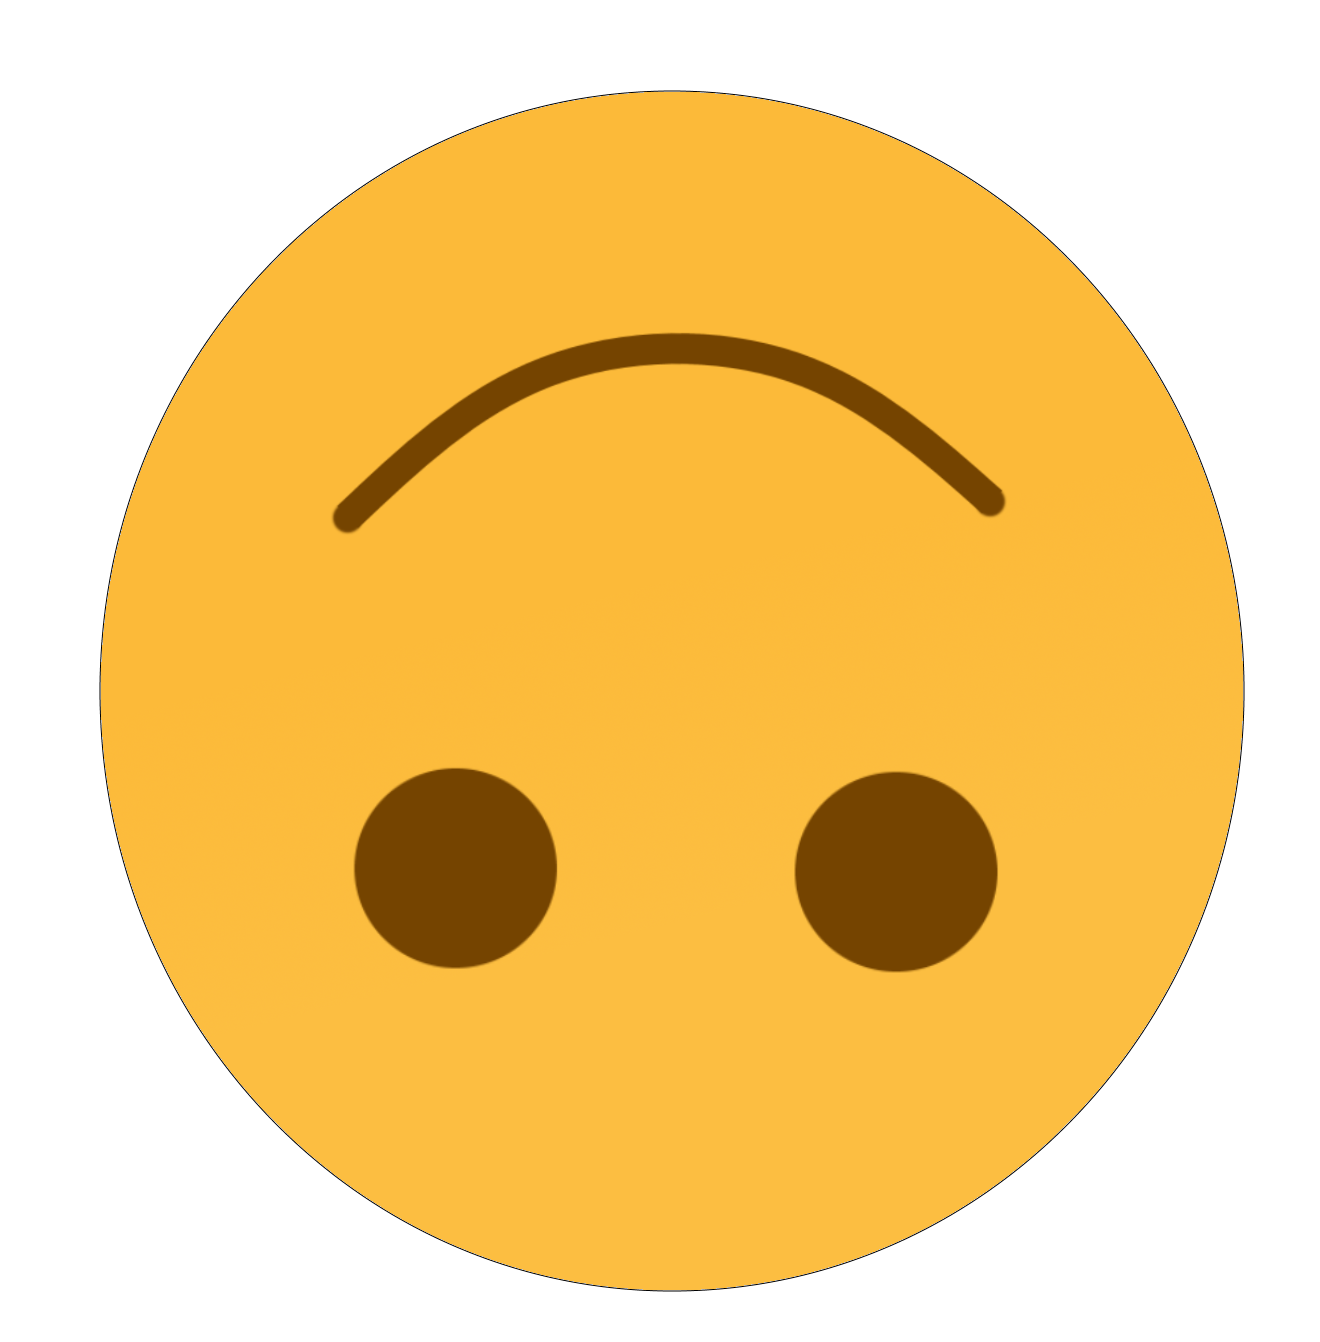 Emoji Yellow Face Free HQ Image PNG Image